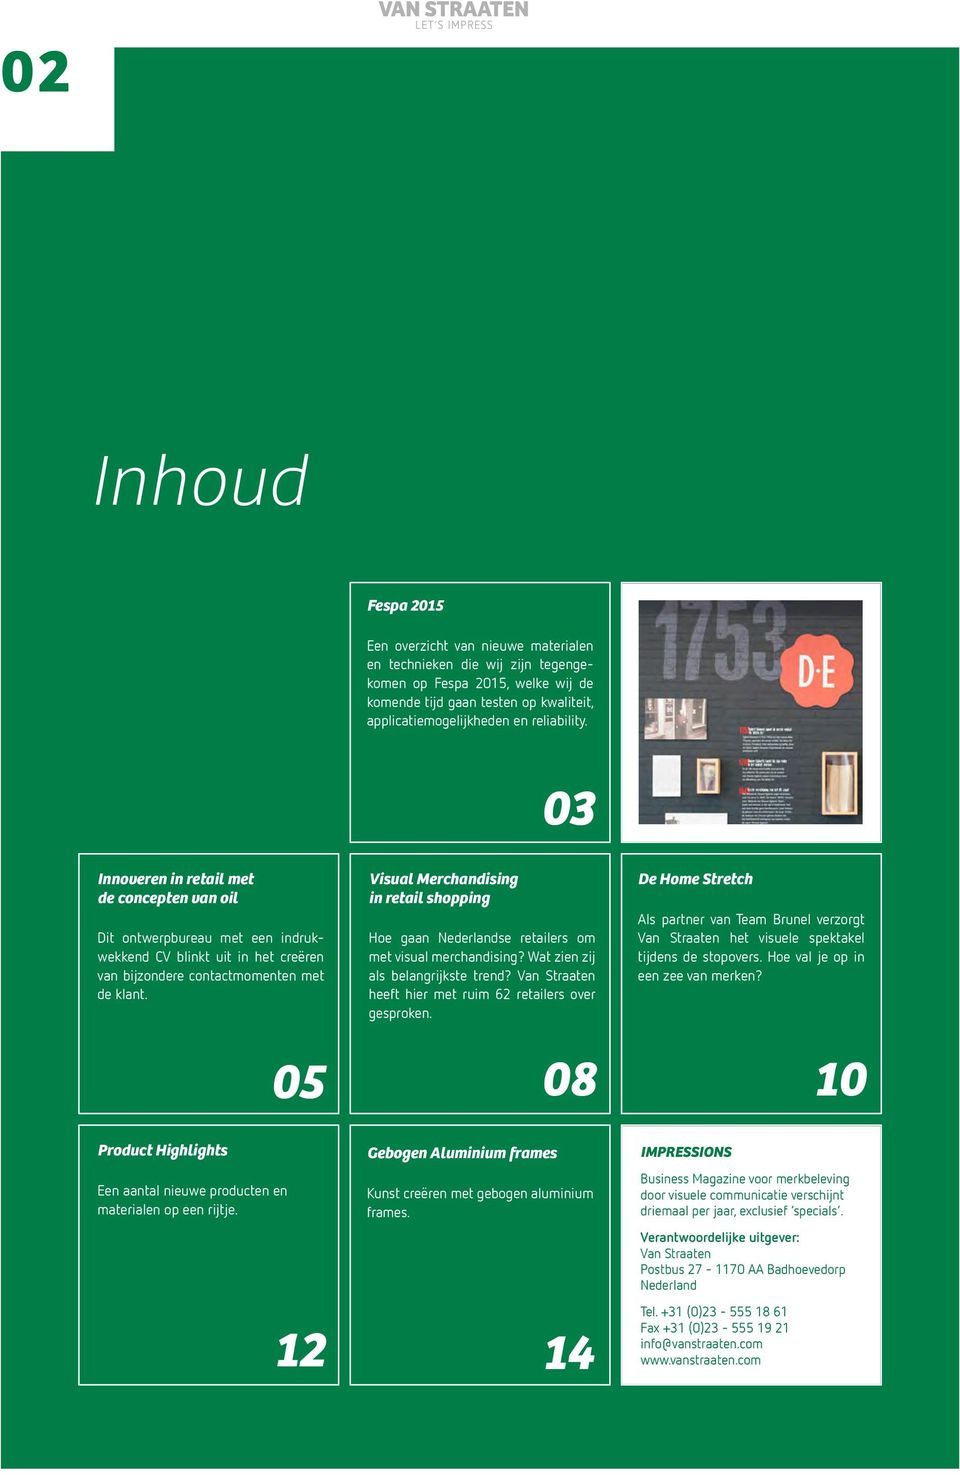 05 Visual Merchandising in retail shopping Hoe gaan Nederlandse retailers om met visual merchandising? Wat zien zij als belangrijkste trend?